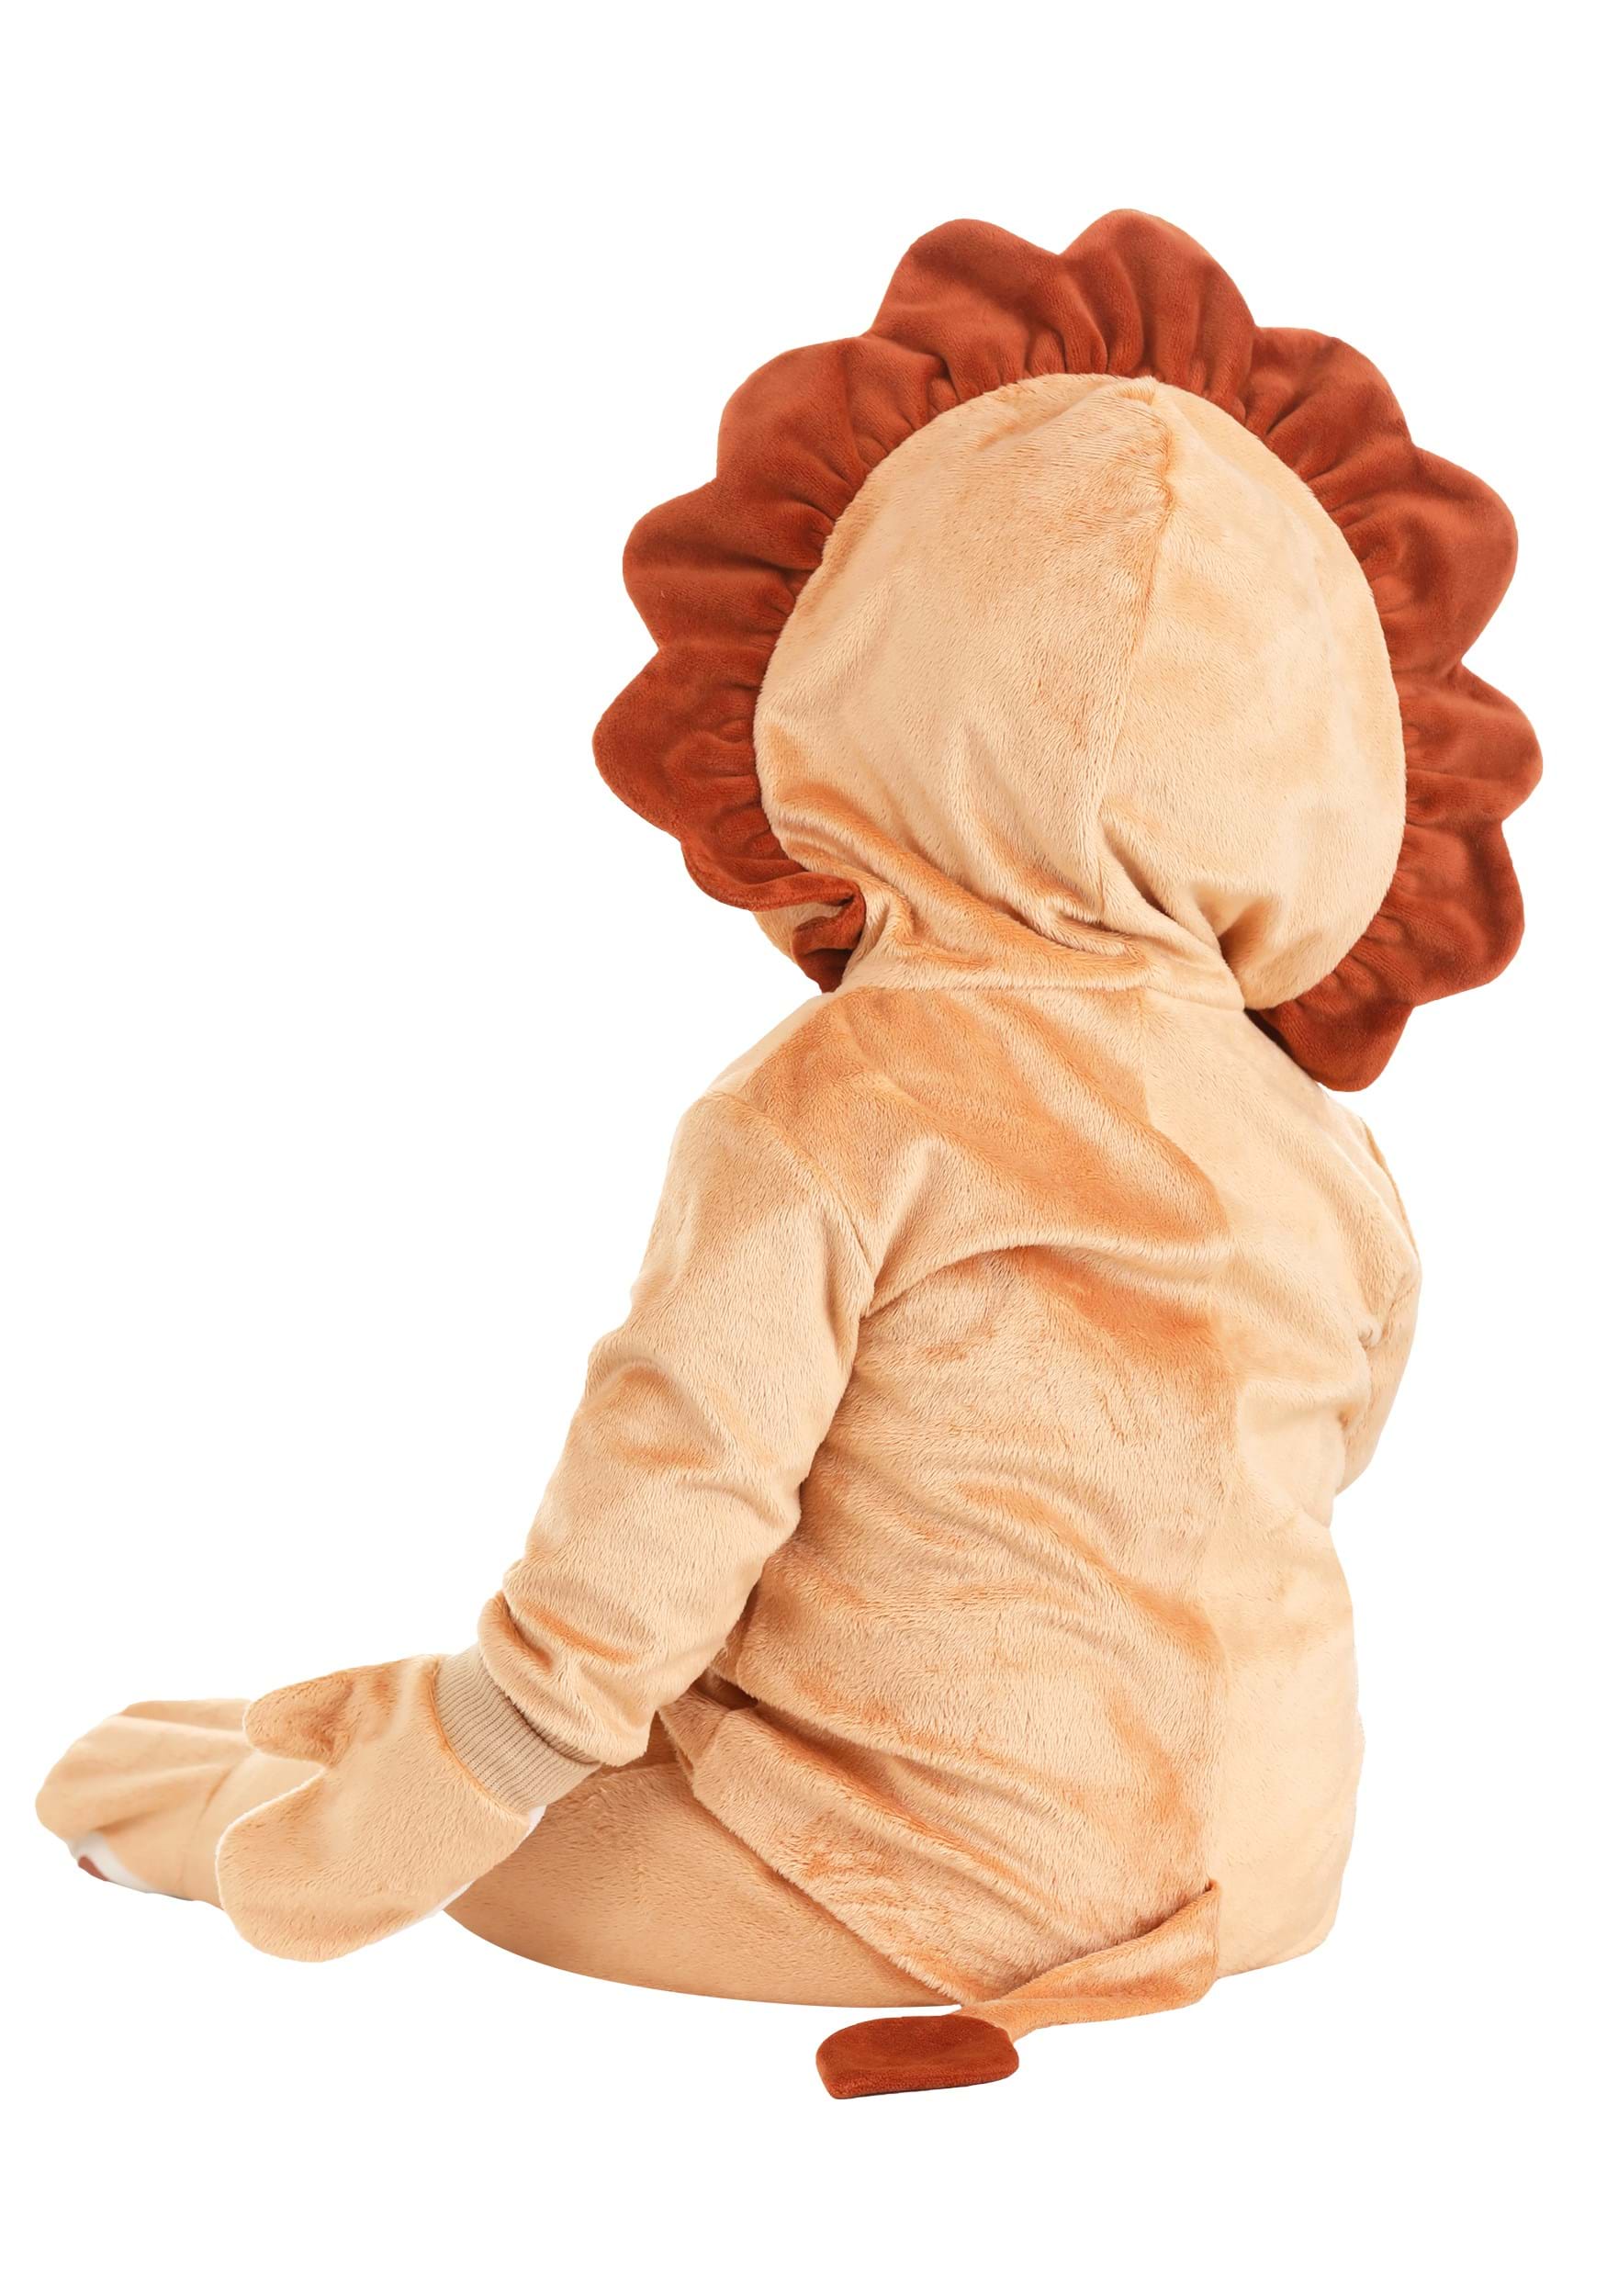 Infant's Cozy Lion Costume